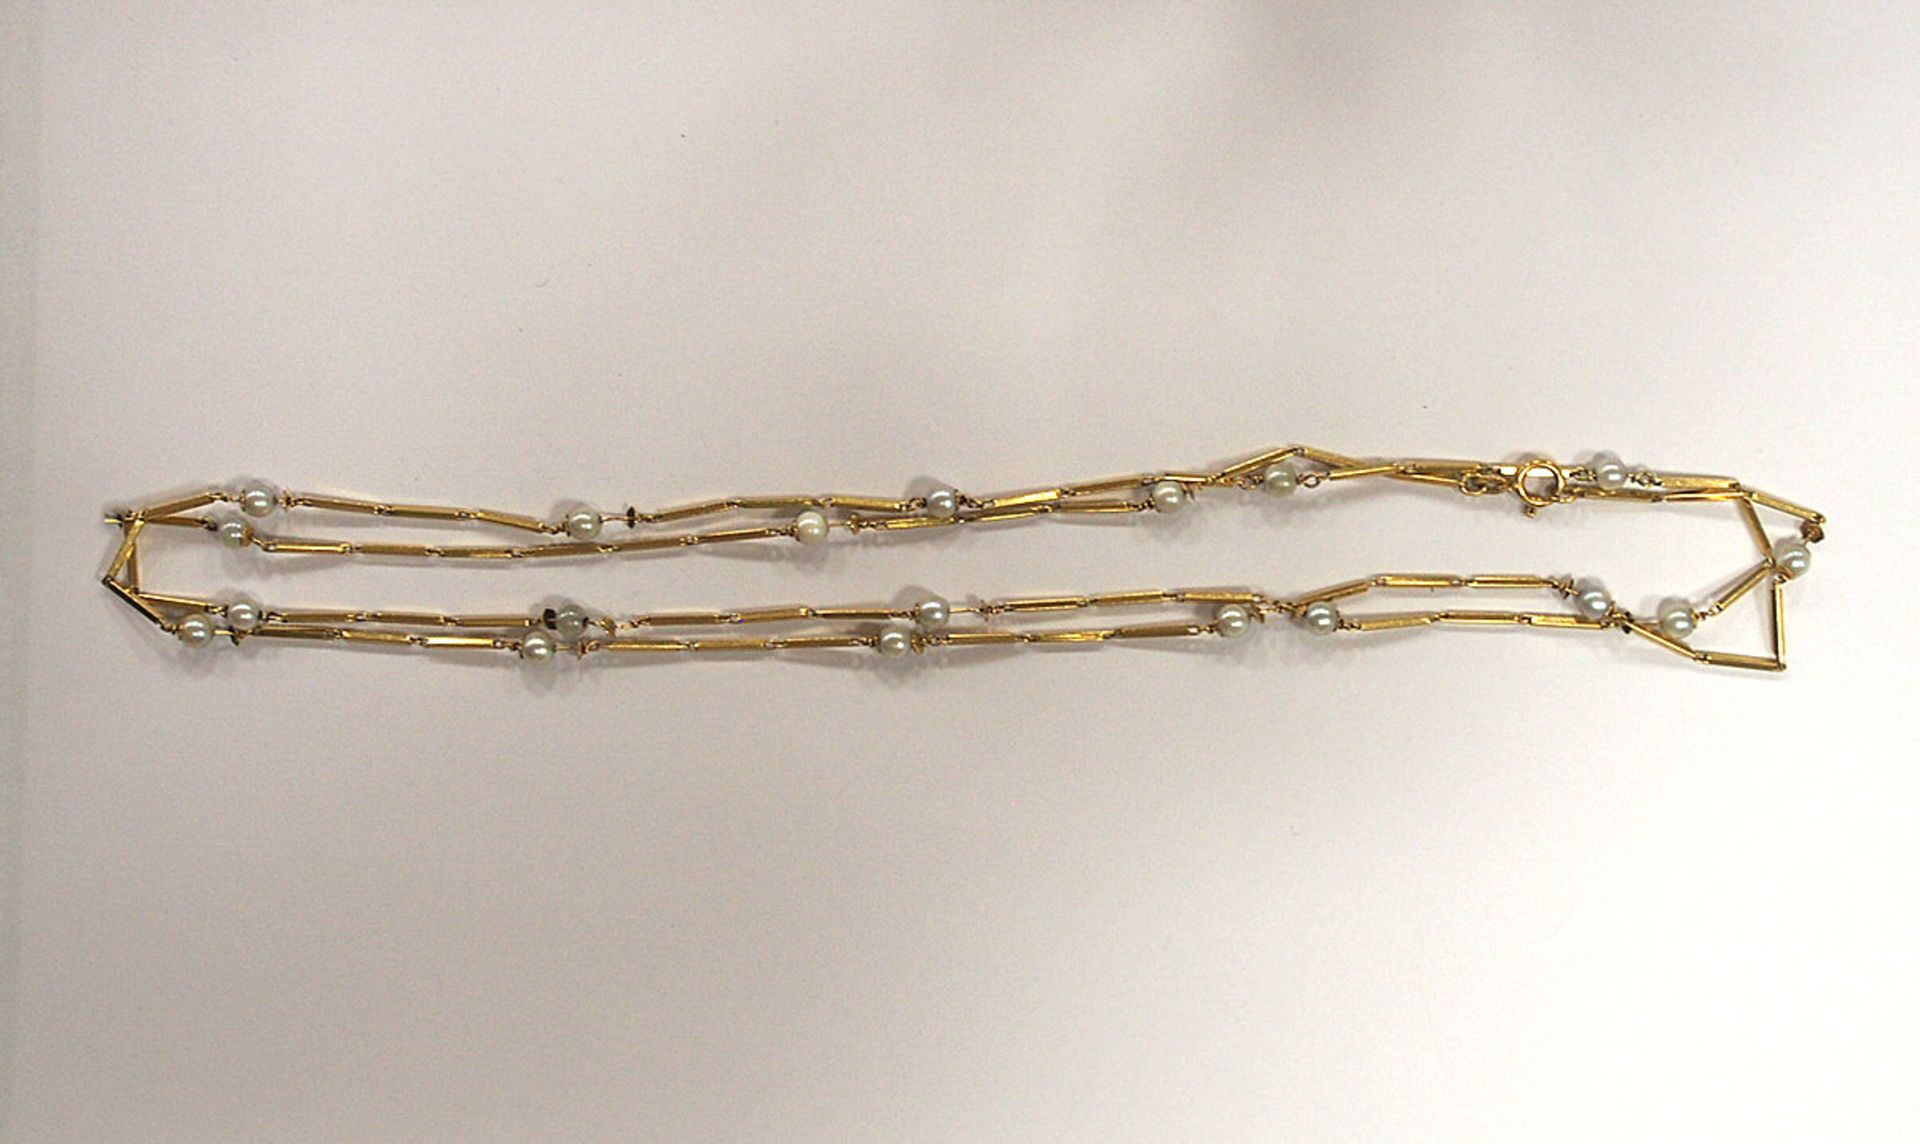 Stabkette mit Perlen - Image 2 of 2